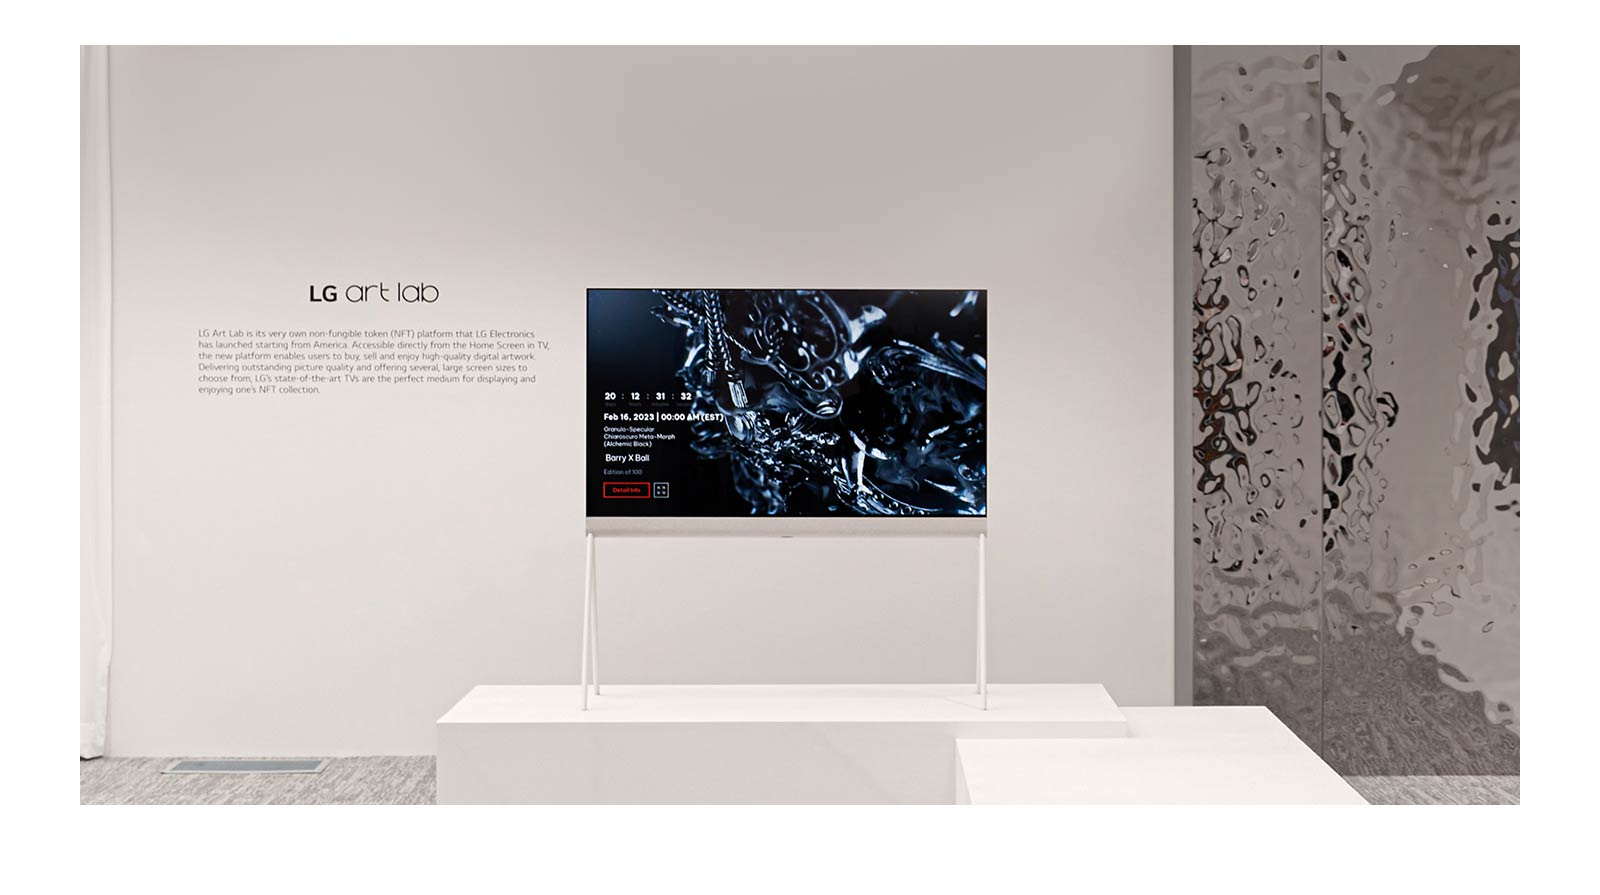 Una imagen de un televisor Easel en una habitación blanca que muestra en pantalla una escultura negra hecha con arte digital. La habitación se refleja en una escultura plateada ubicada a la derecha del televisor.